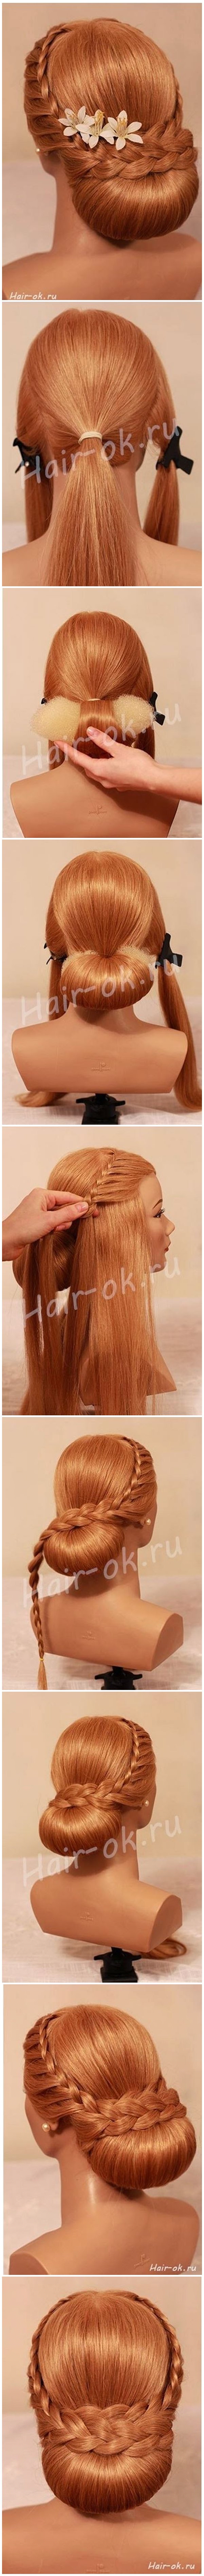 braided bun hairstyle M